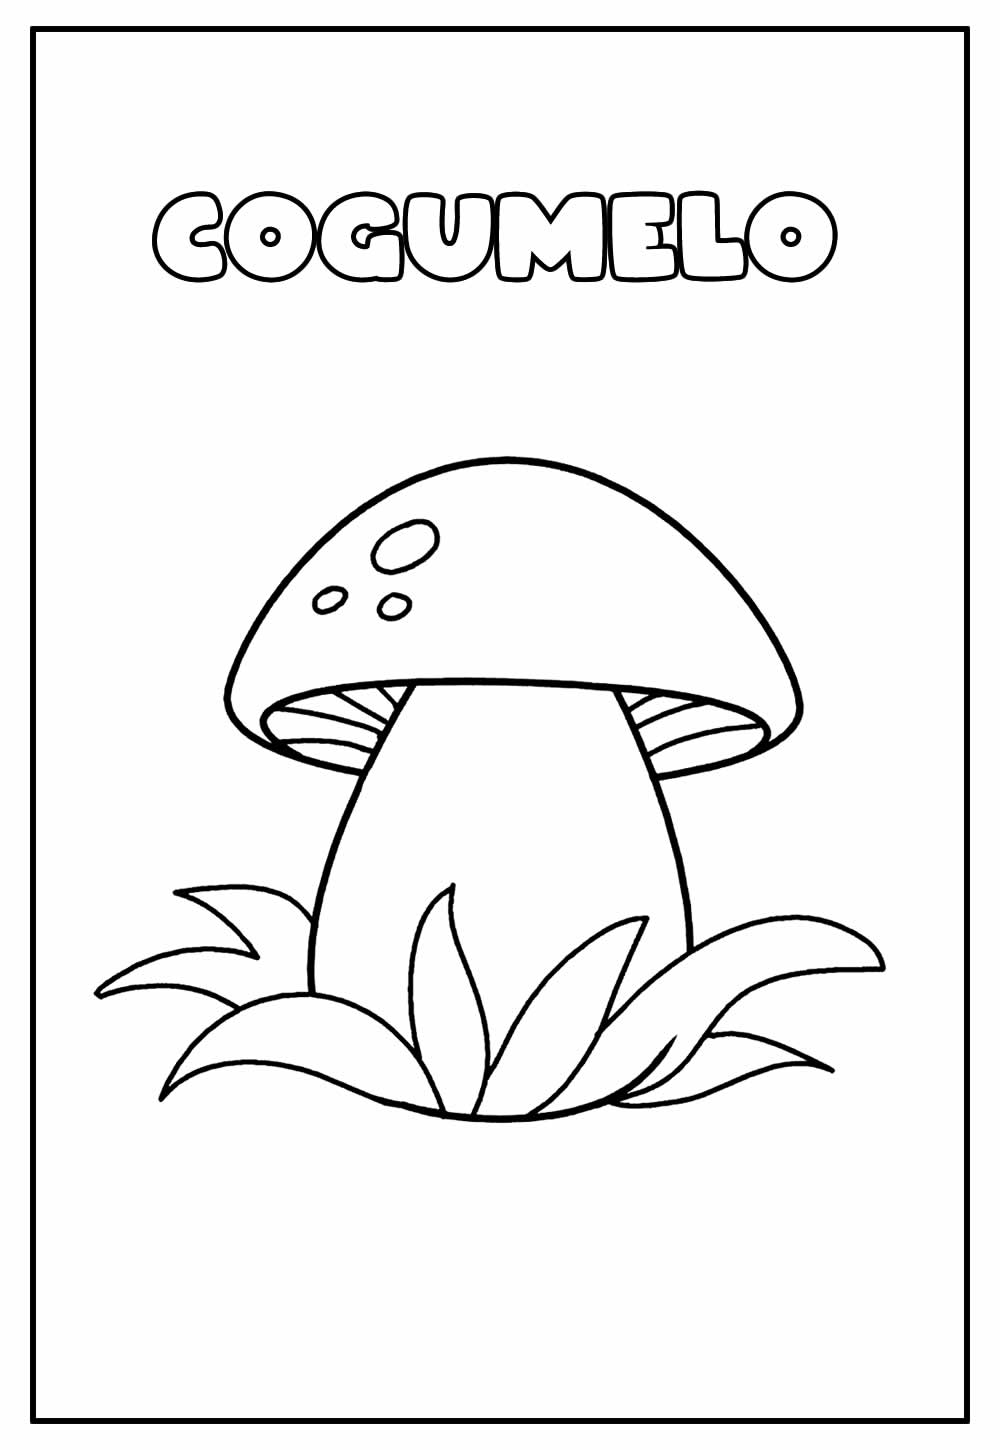 Desenho Educativo para colorir de Cogumelo